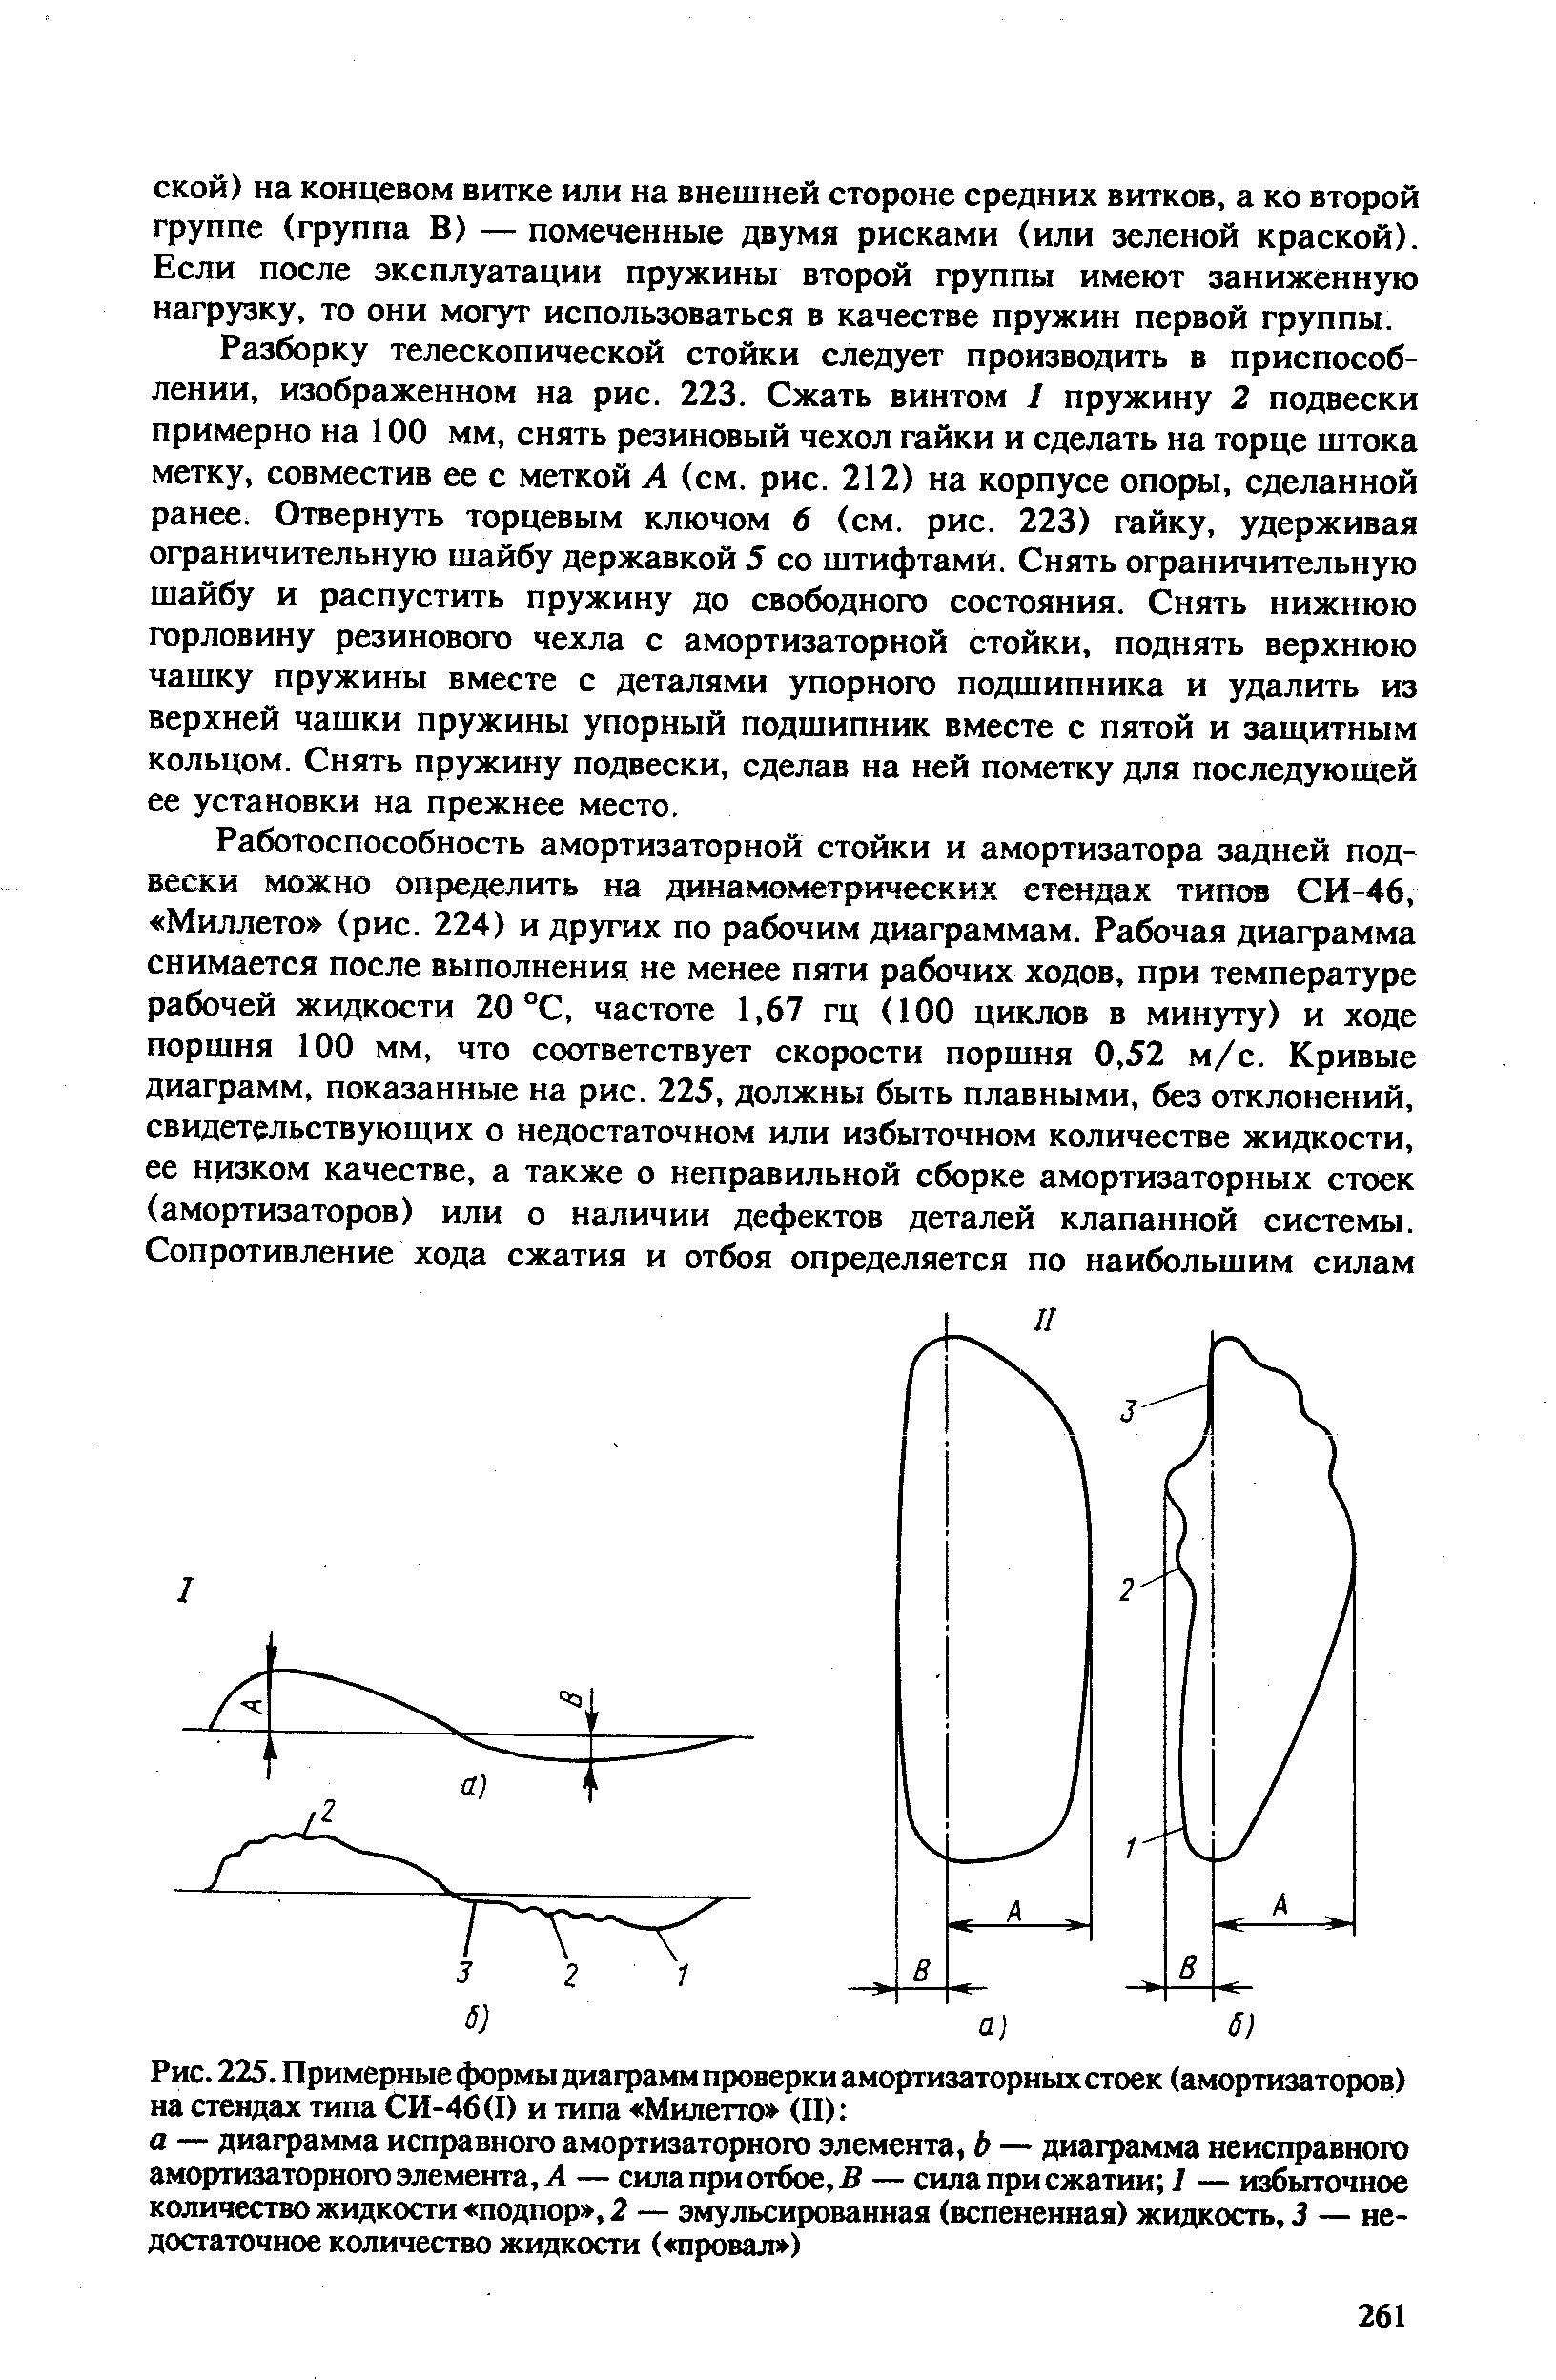 Рис. 225. Примерные формы диаграмм проверки амортизаторных стоек (амортизаторов) на стендах типа СИ-46 (I) и типа Милетто (II) 
